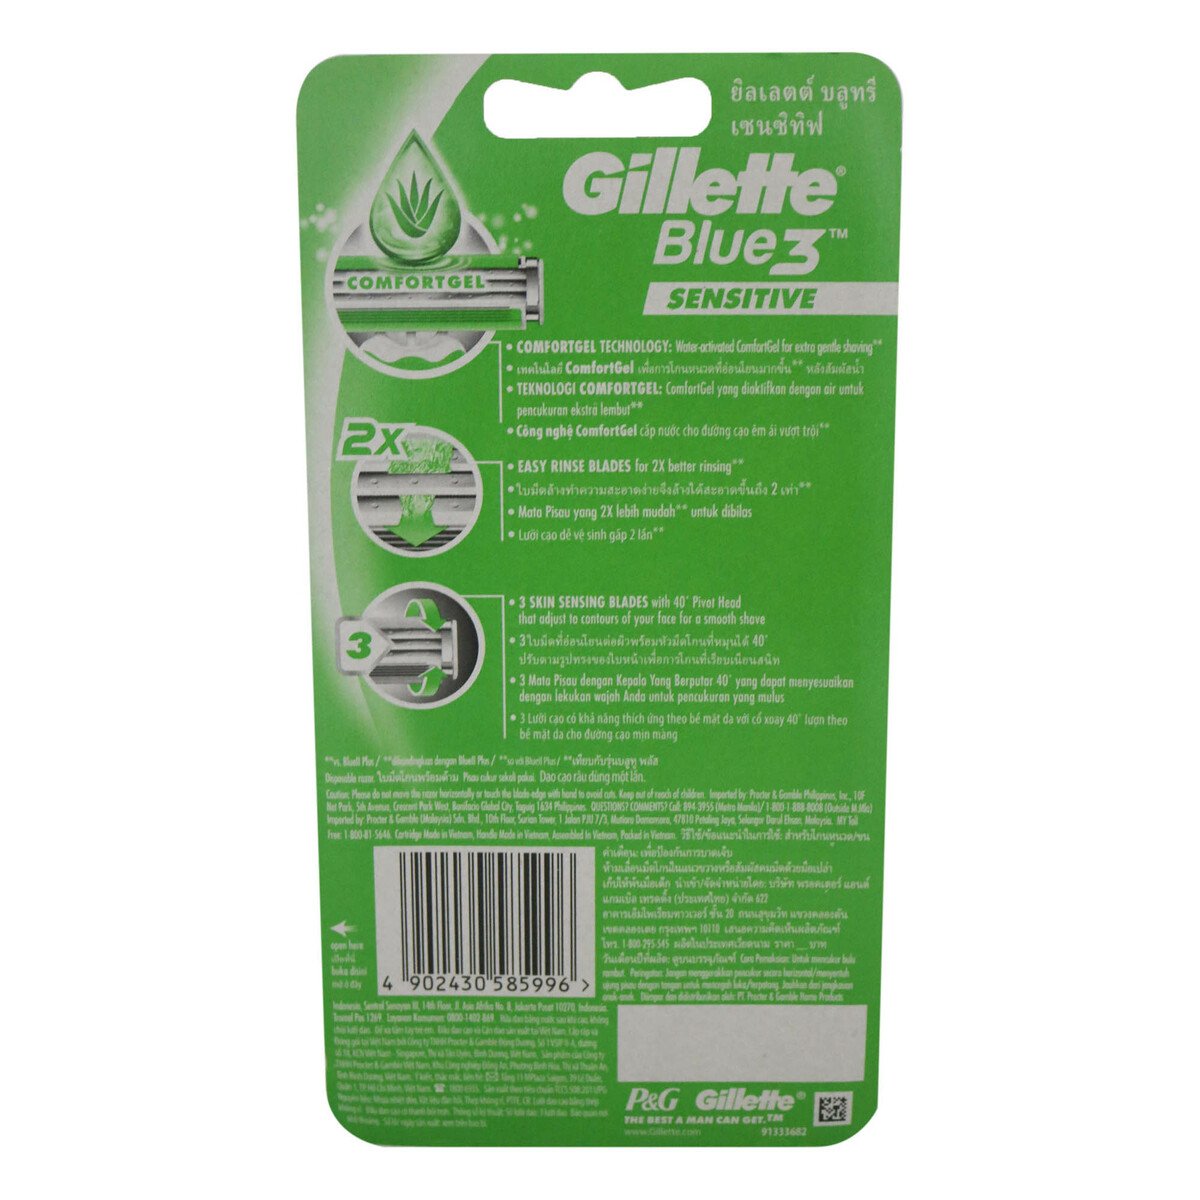 Gillette Blue 3 Sensitive 4pcs